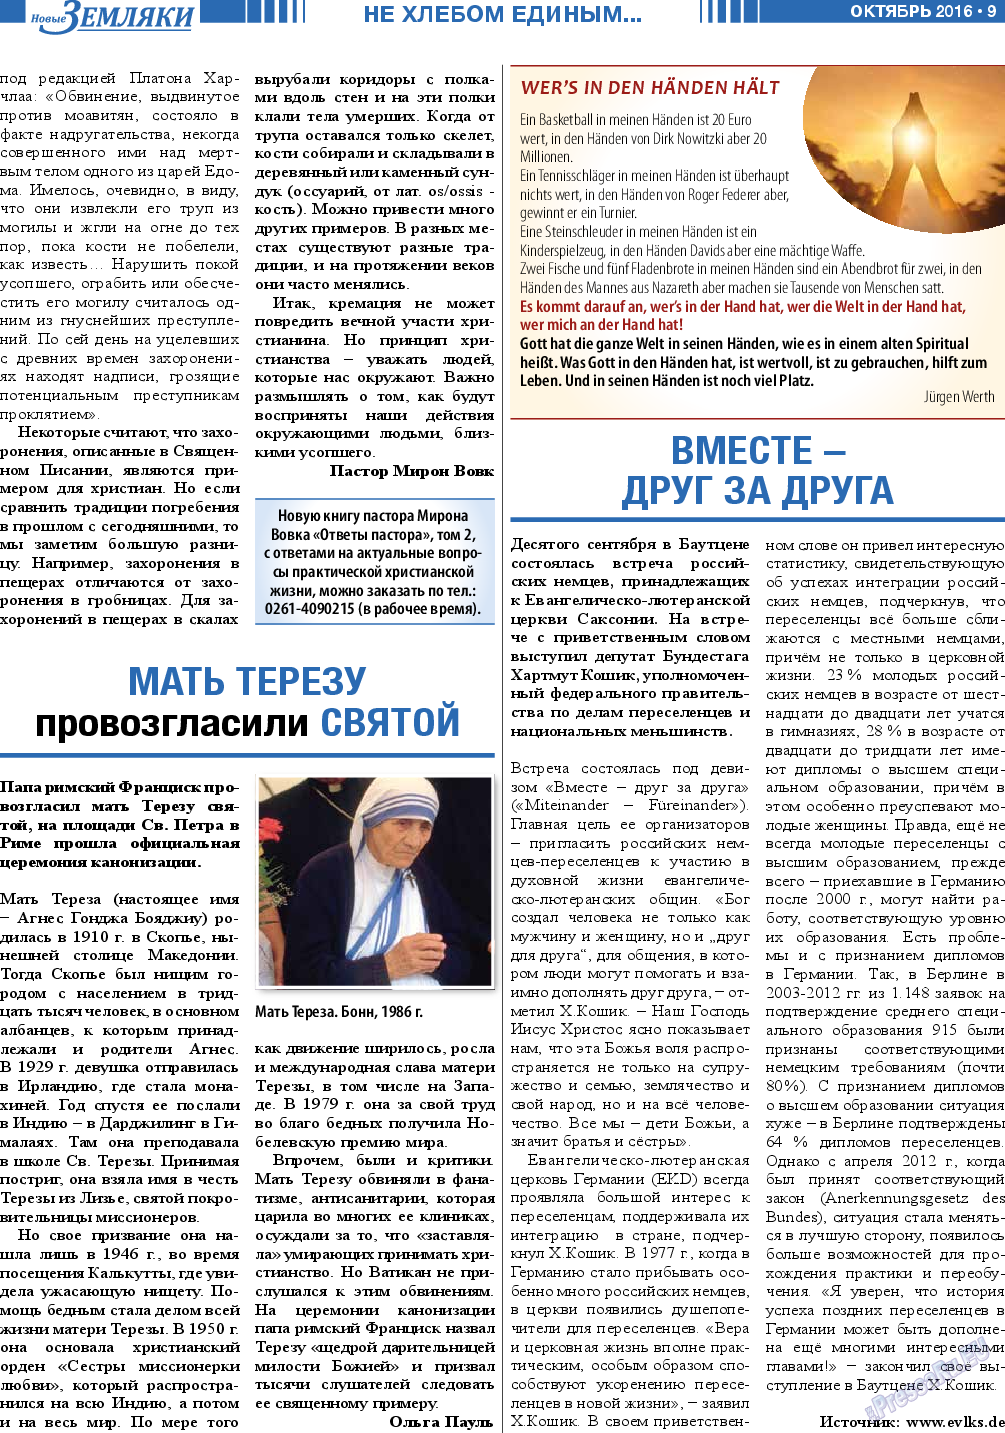 Новые Земляки, газета. 2016 №10 стр.9